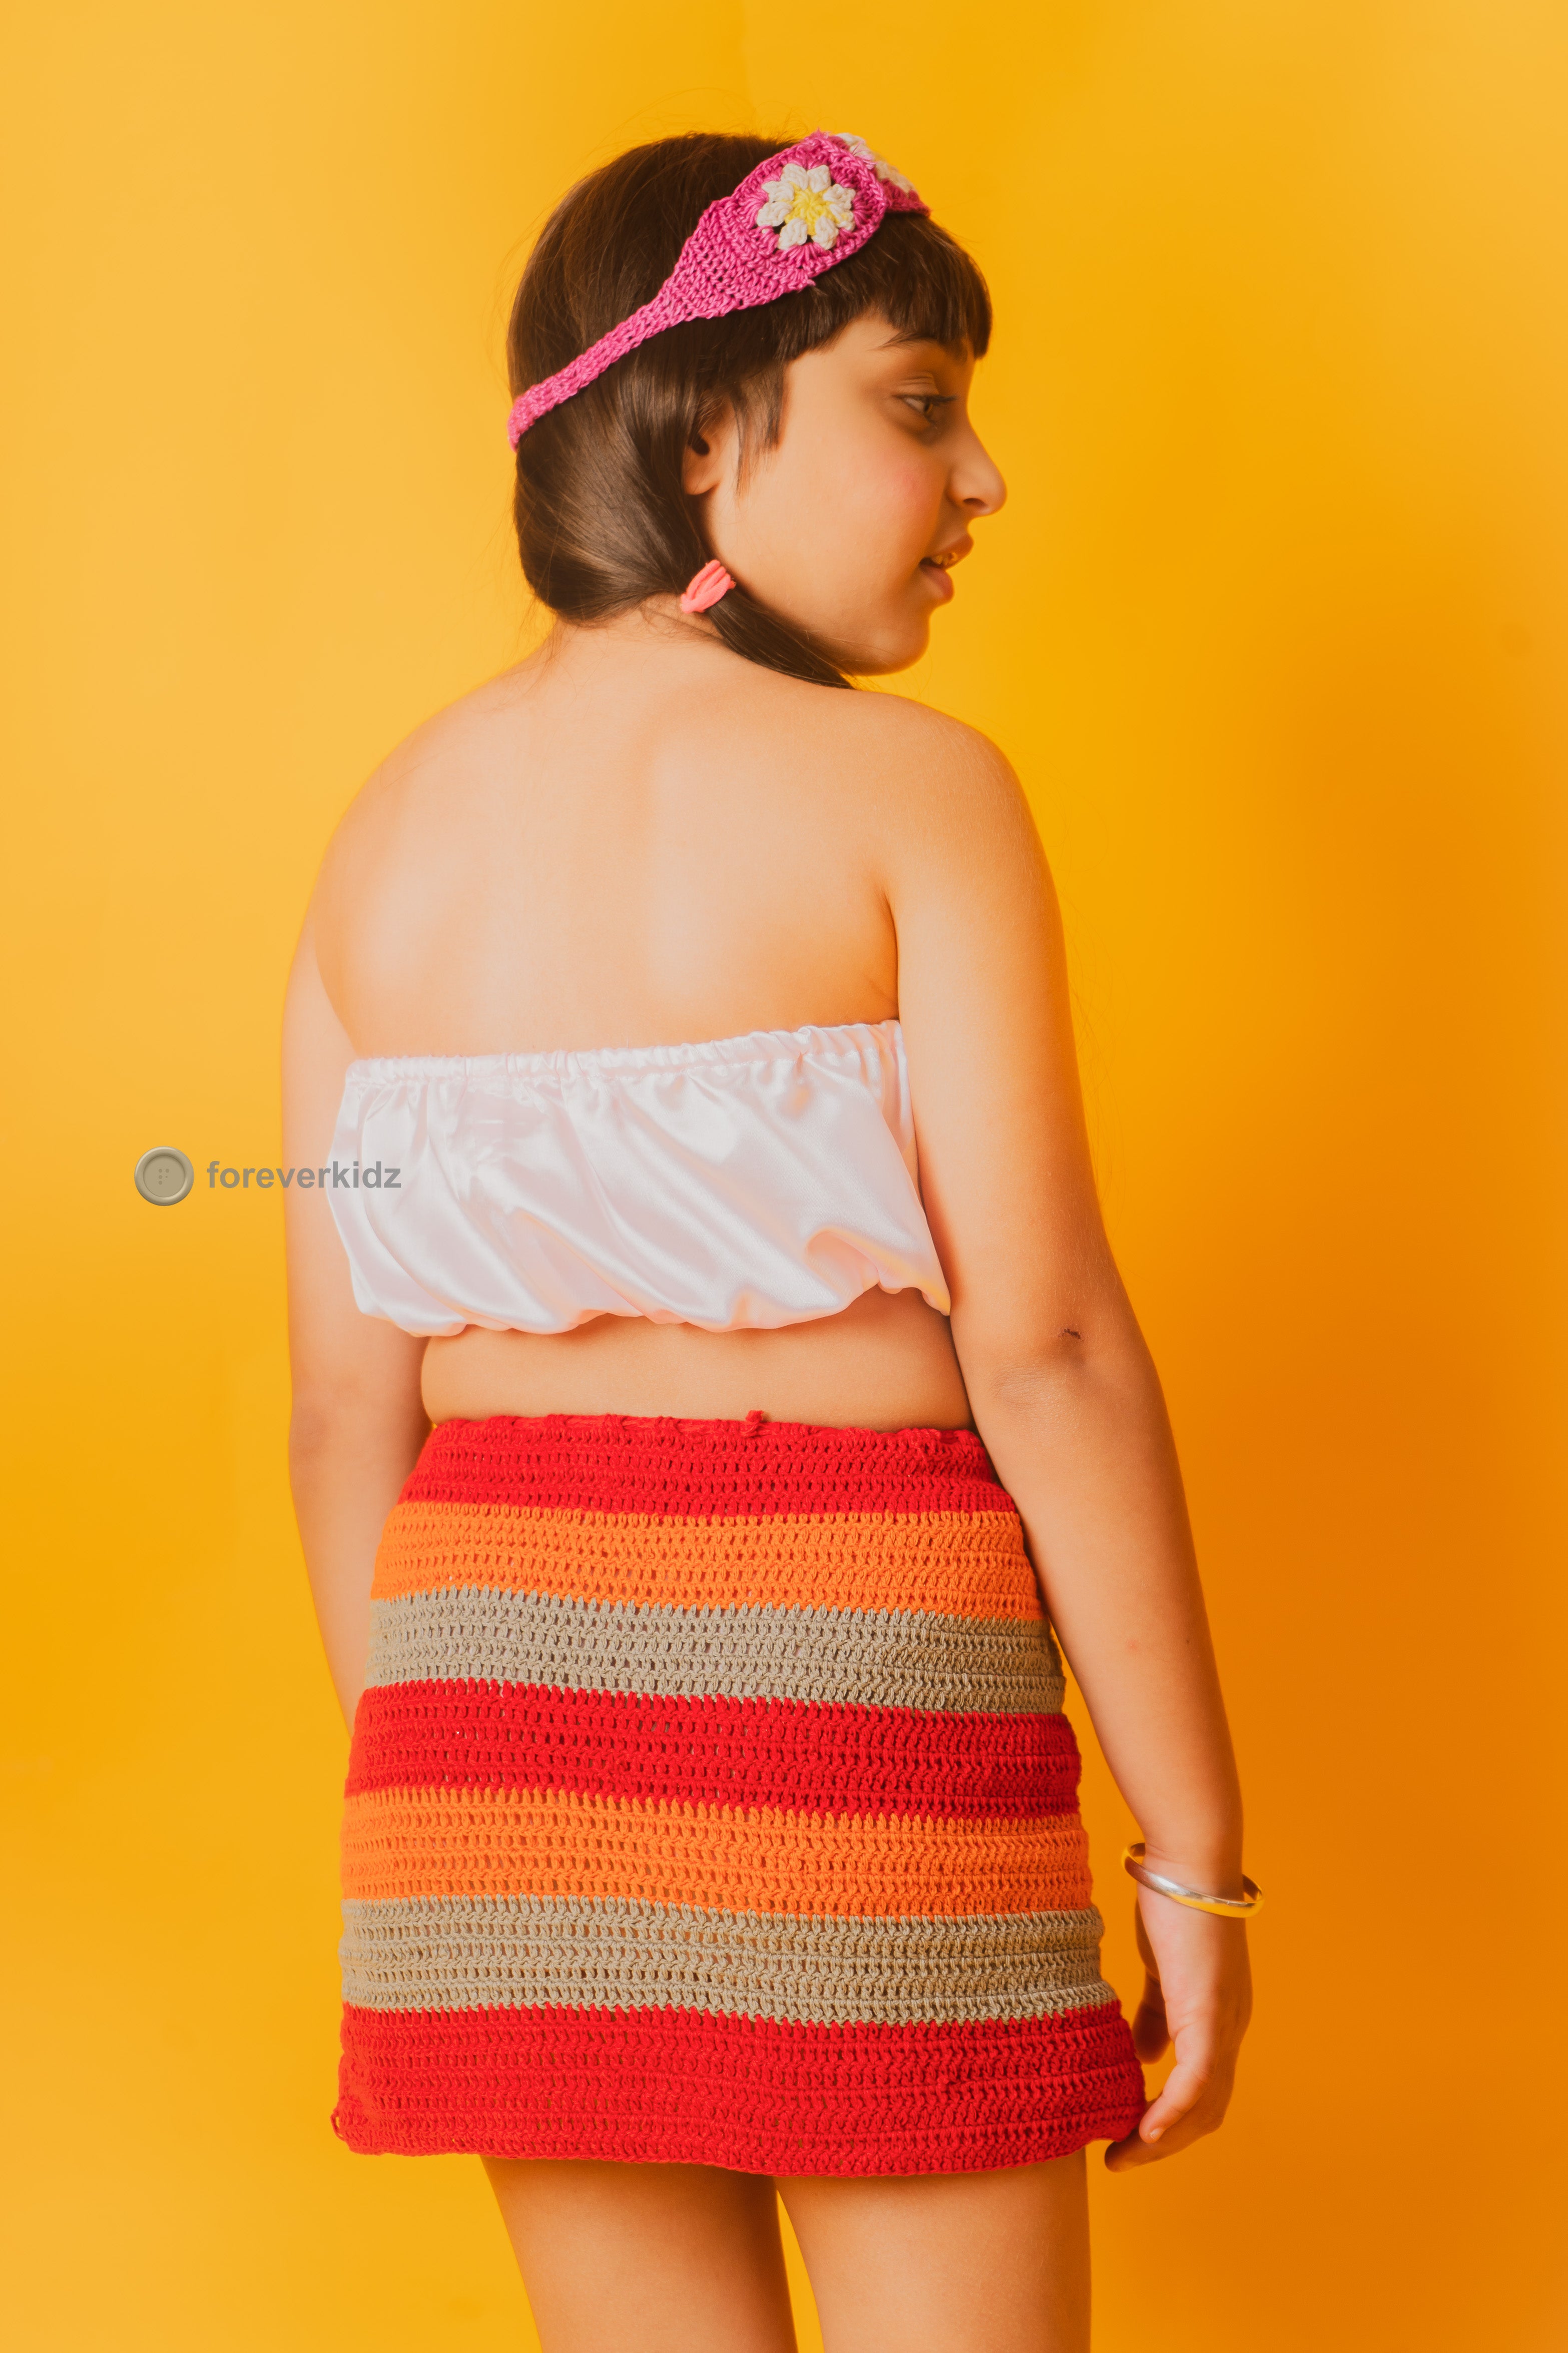 Crochet Stripes Skirt for Party 